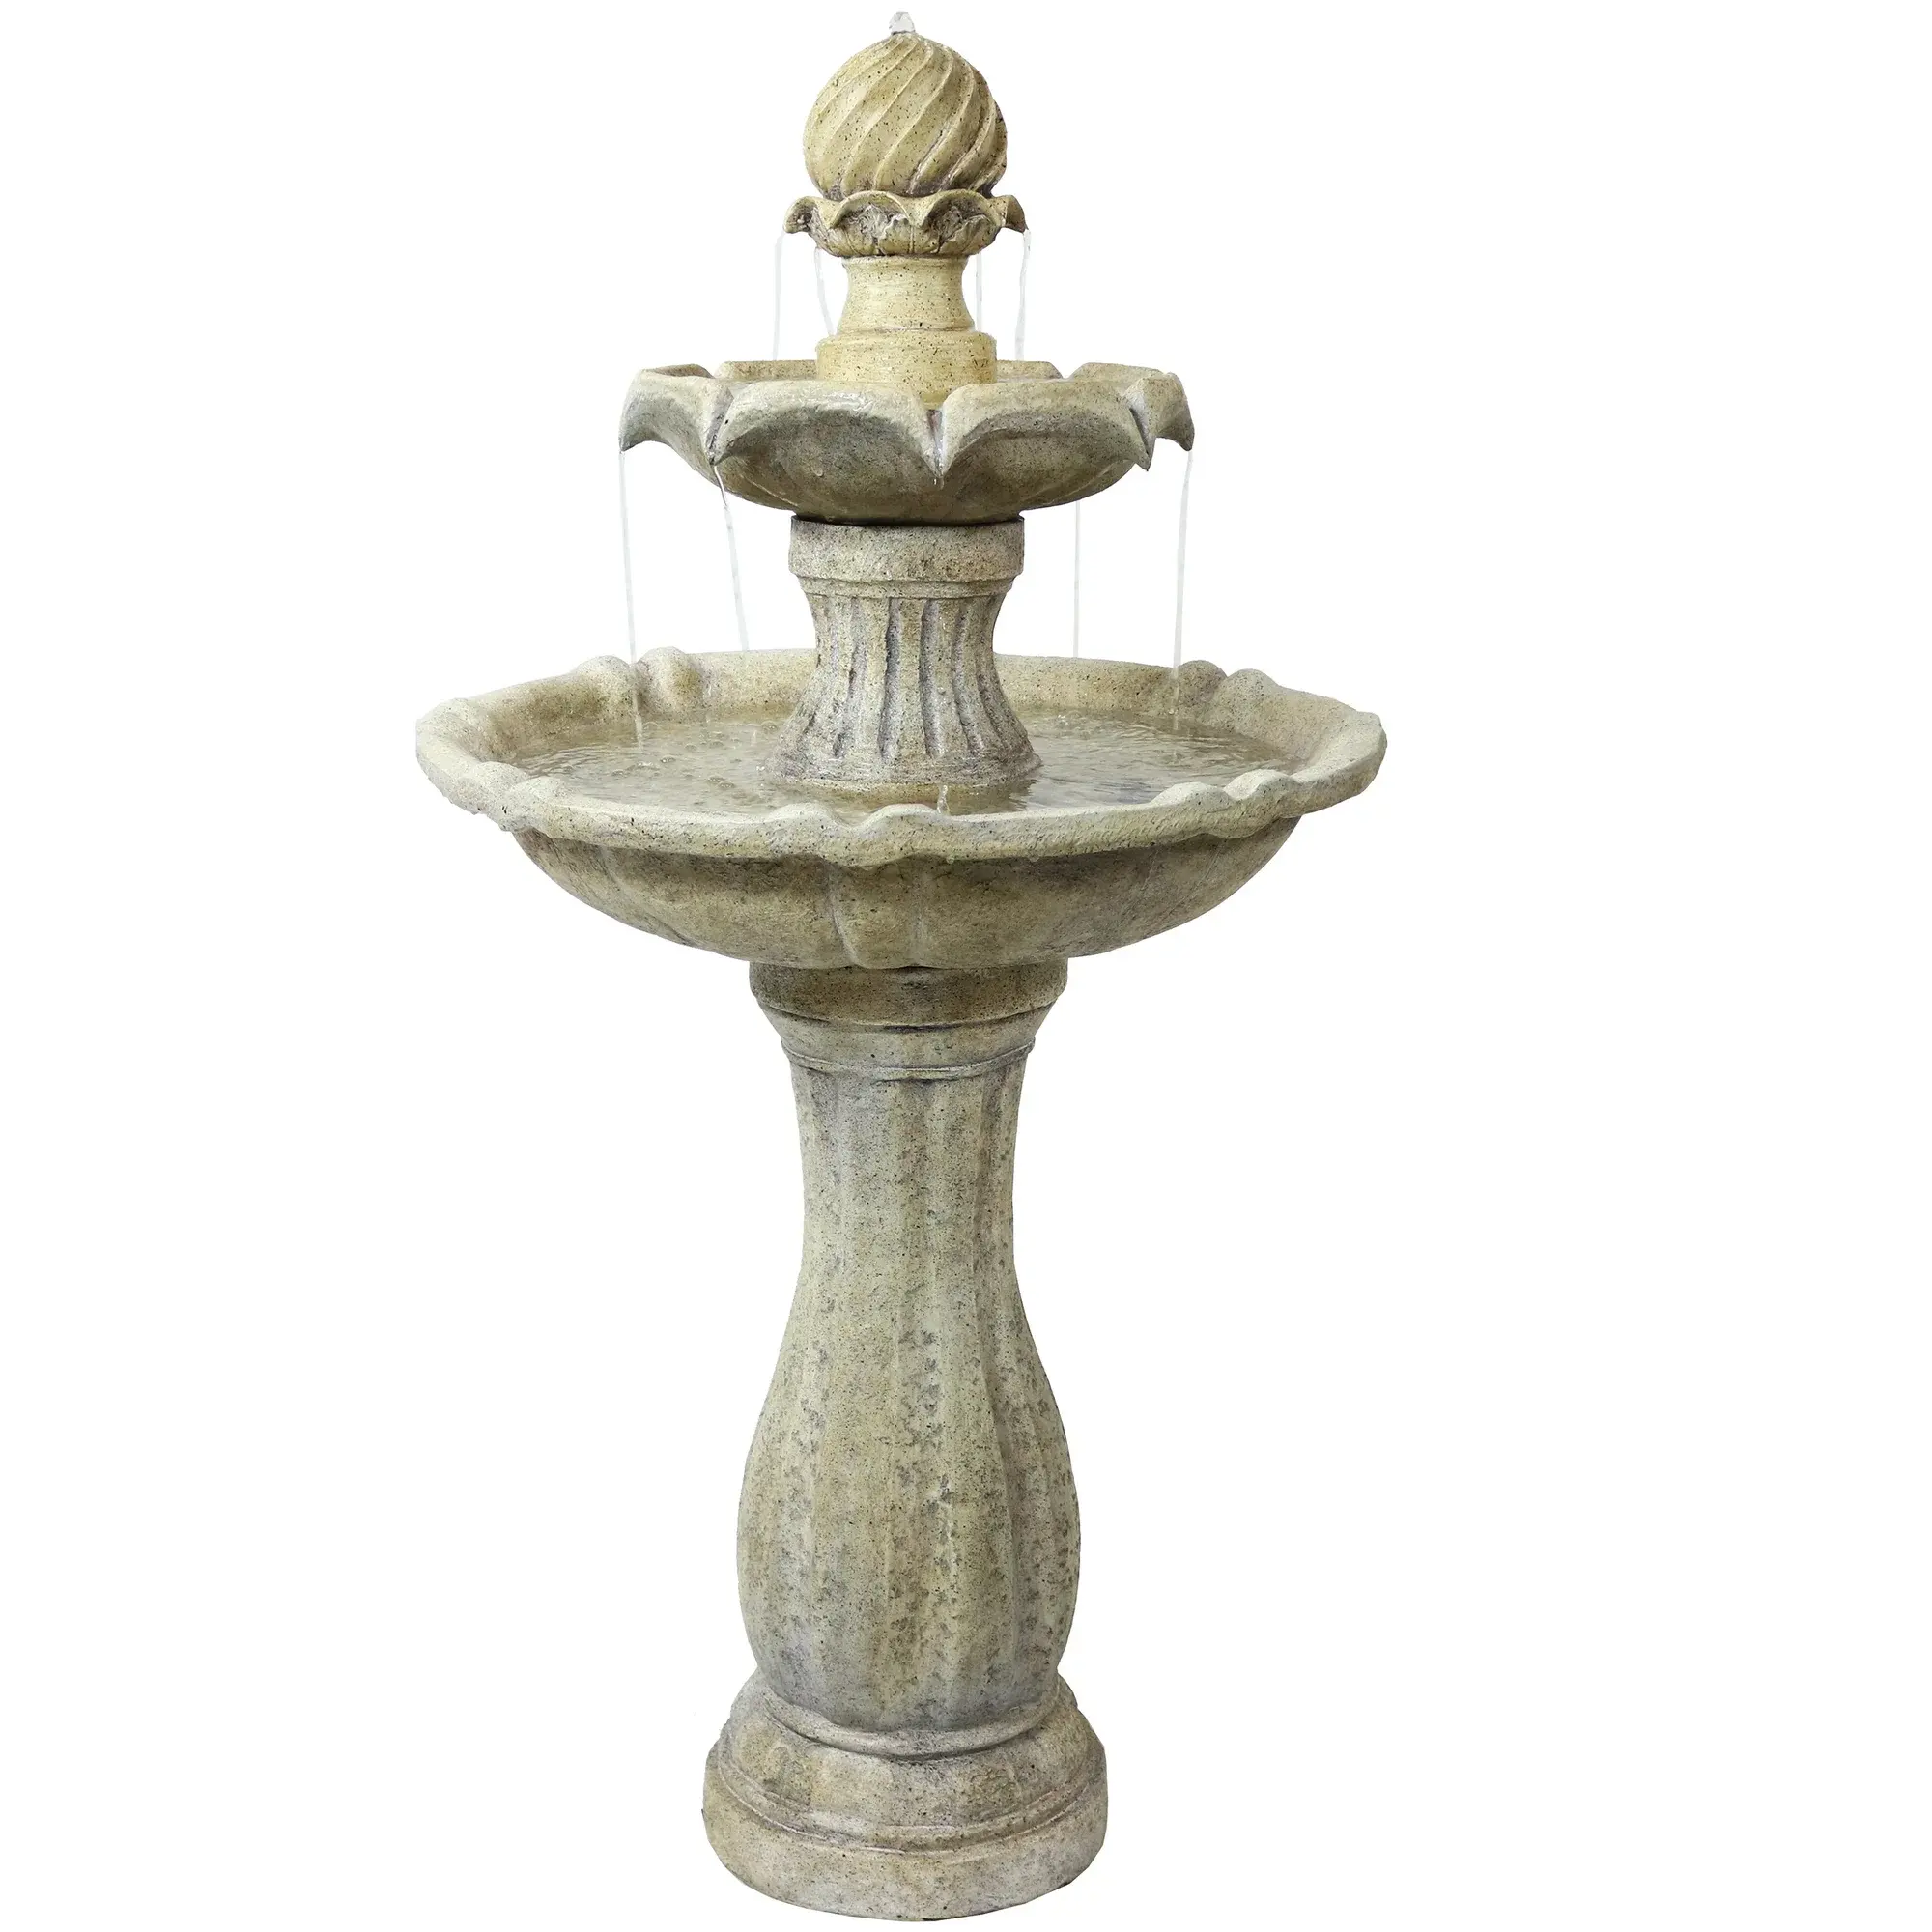 Fontana d'acqua in marmo giallo chiaro, fontana in marmo intagliato a mano, fontana in pietra di marmo decorativo